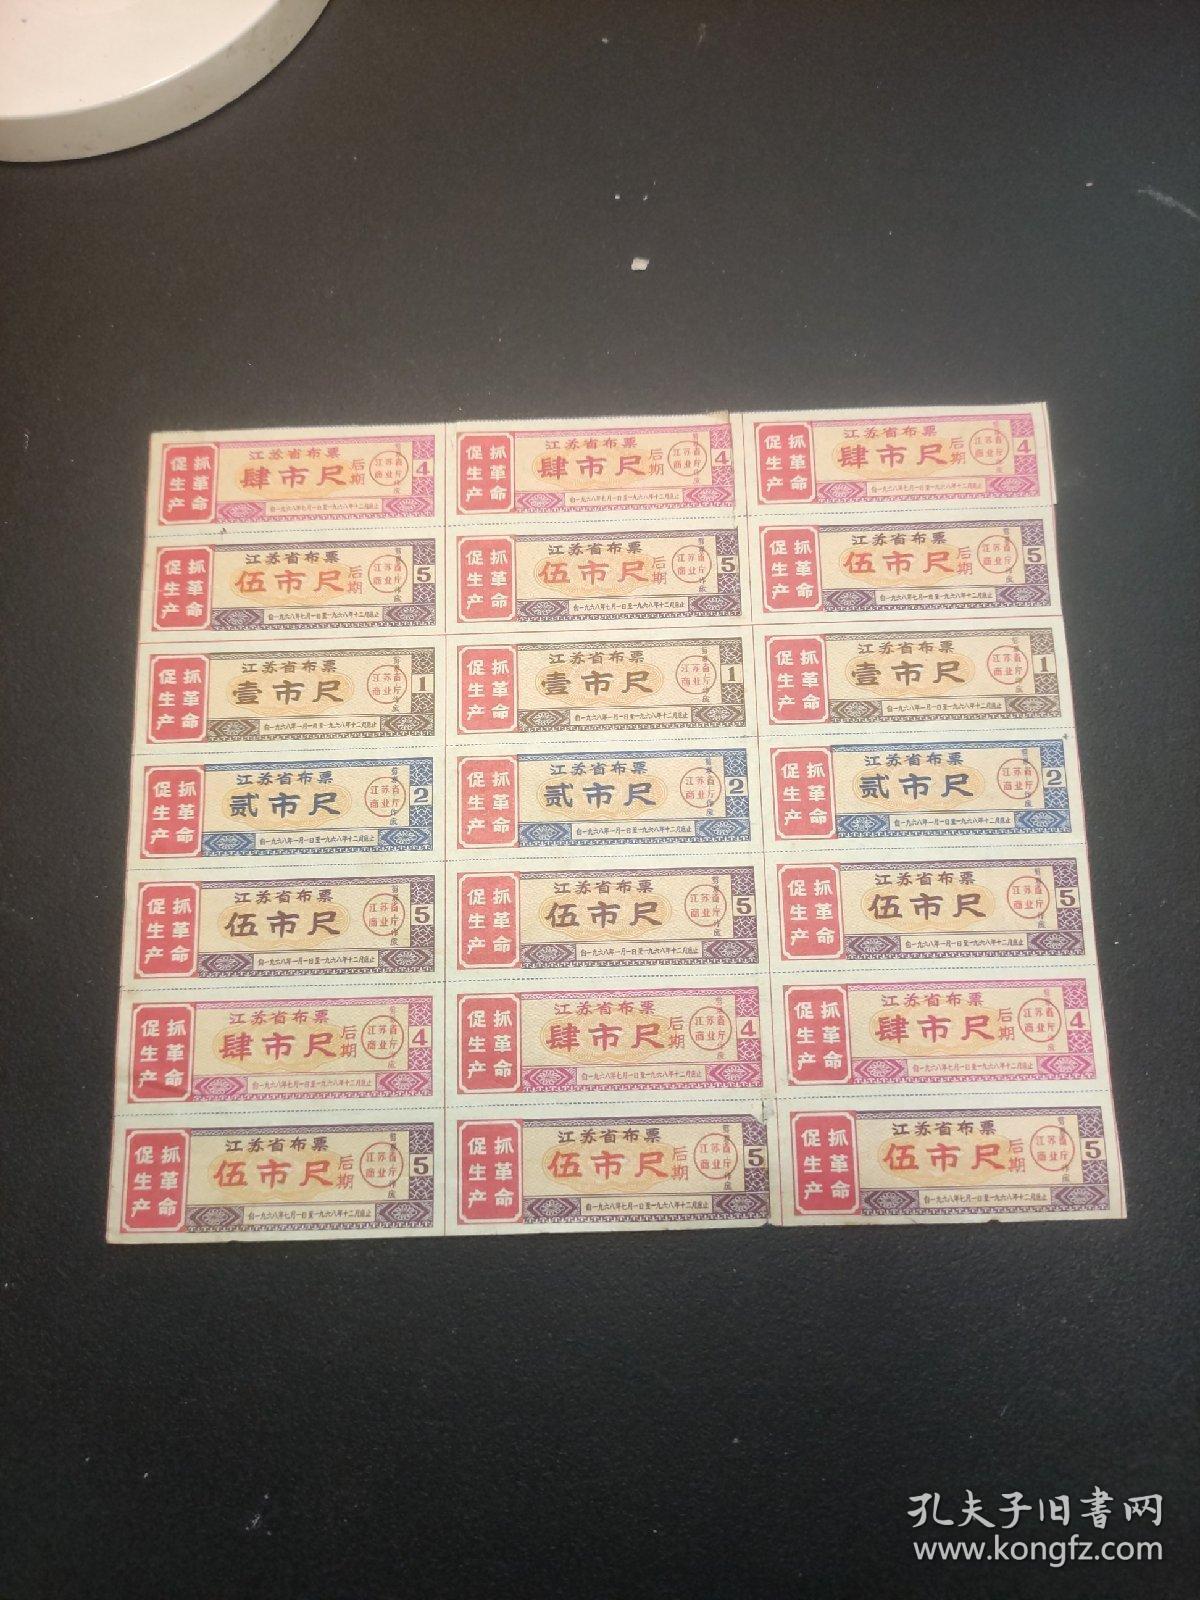 1968年江苏省布票壹市尺，贰市尺，伍市尺，肆市尺（后期），伍市尺（后期），套票带语录共21小张